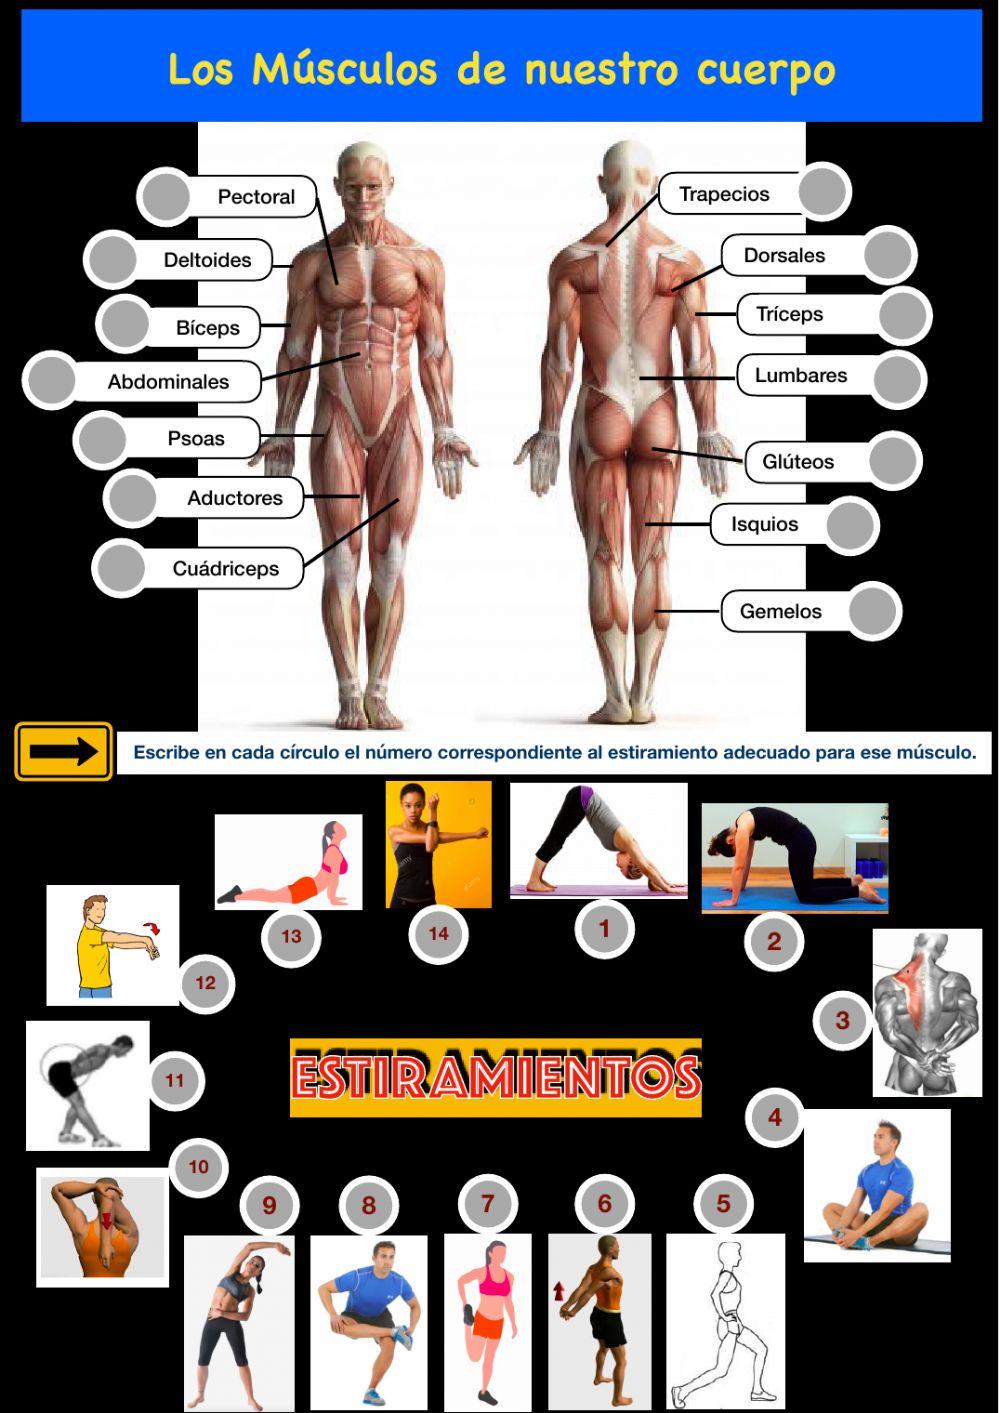 Los músculos del cuerpo y sus ejercicios de estiramiento